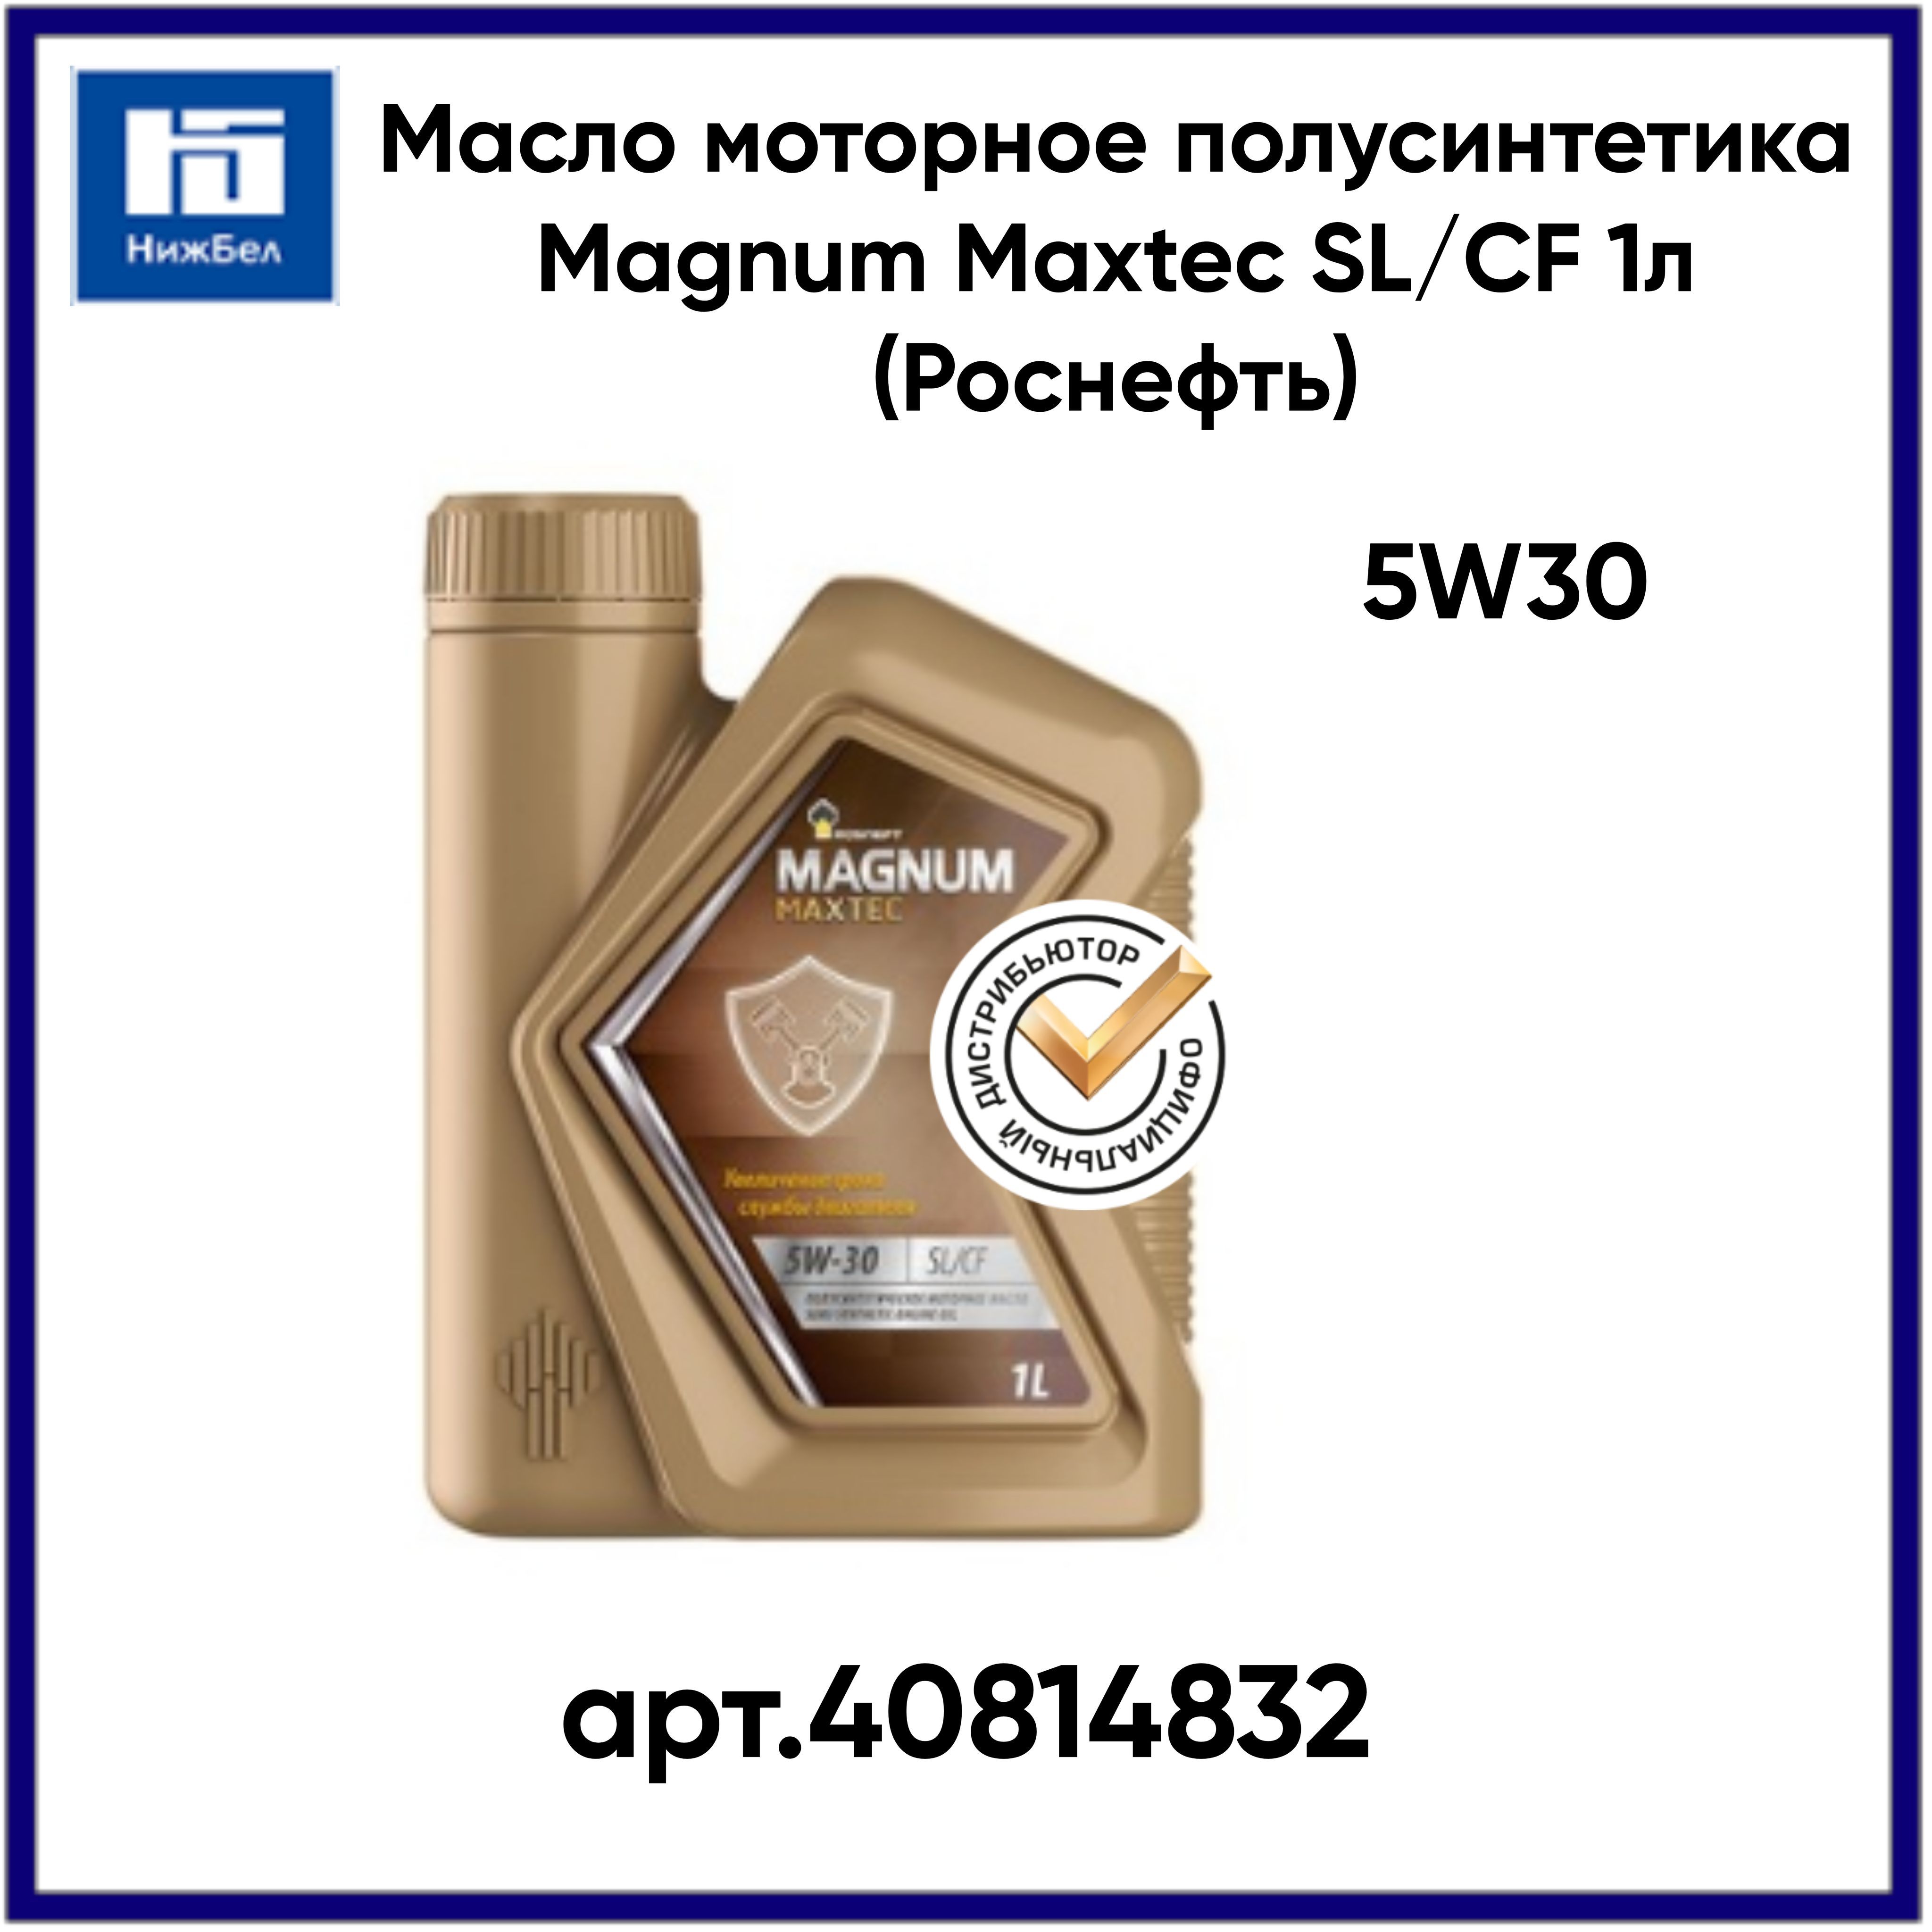 Magnum Maxtec 5w-30. Масло роснефть магнум полусинтетика